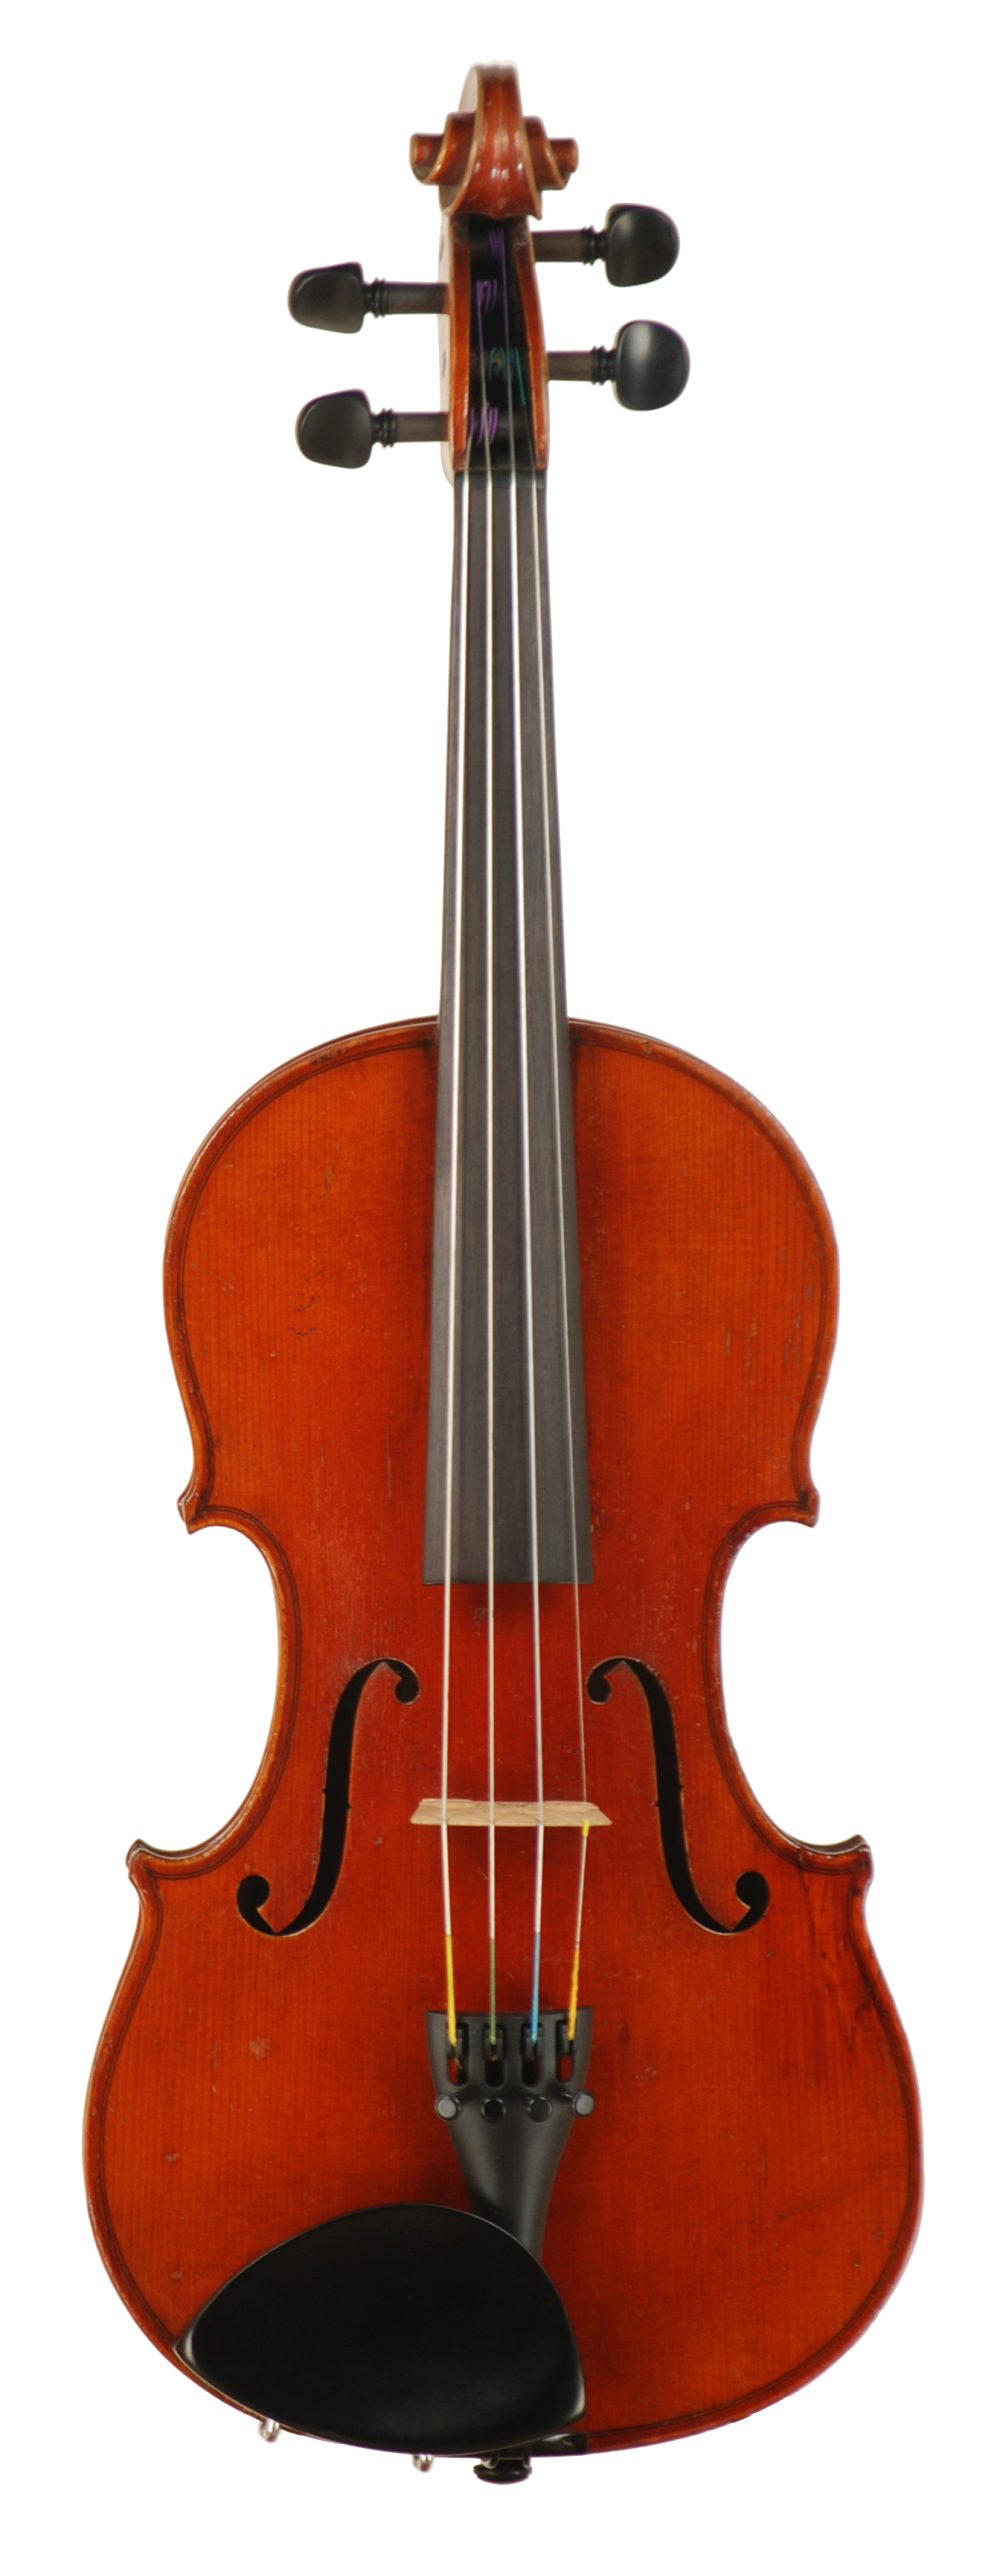 https://www.jrjuddviolins.com/wp-content/uploads/2022/11/Heinrich-E-Heberlein-%E2%80%93-Trade-Violin-circa-1921-Copy-of-an-Antonius-Stradivarius-SKU-54101-Top-scaled.jpg